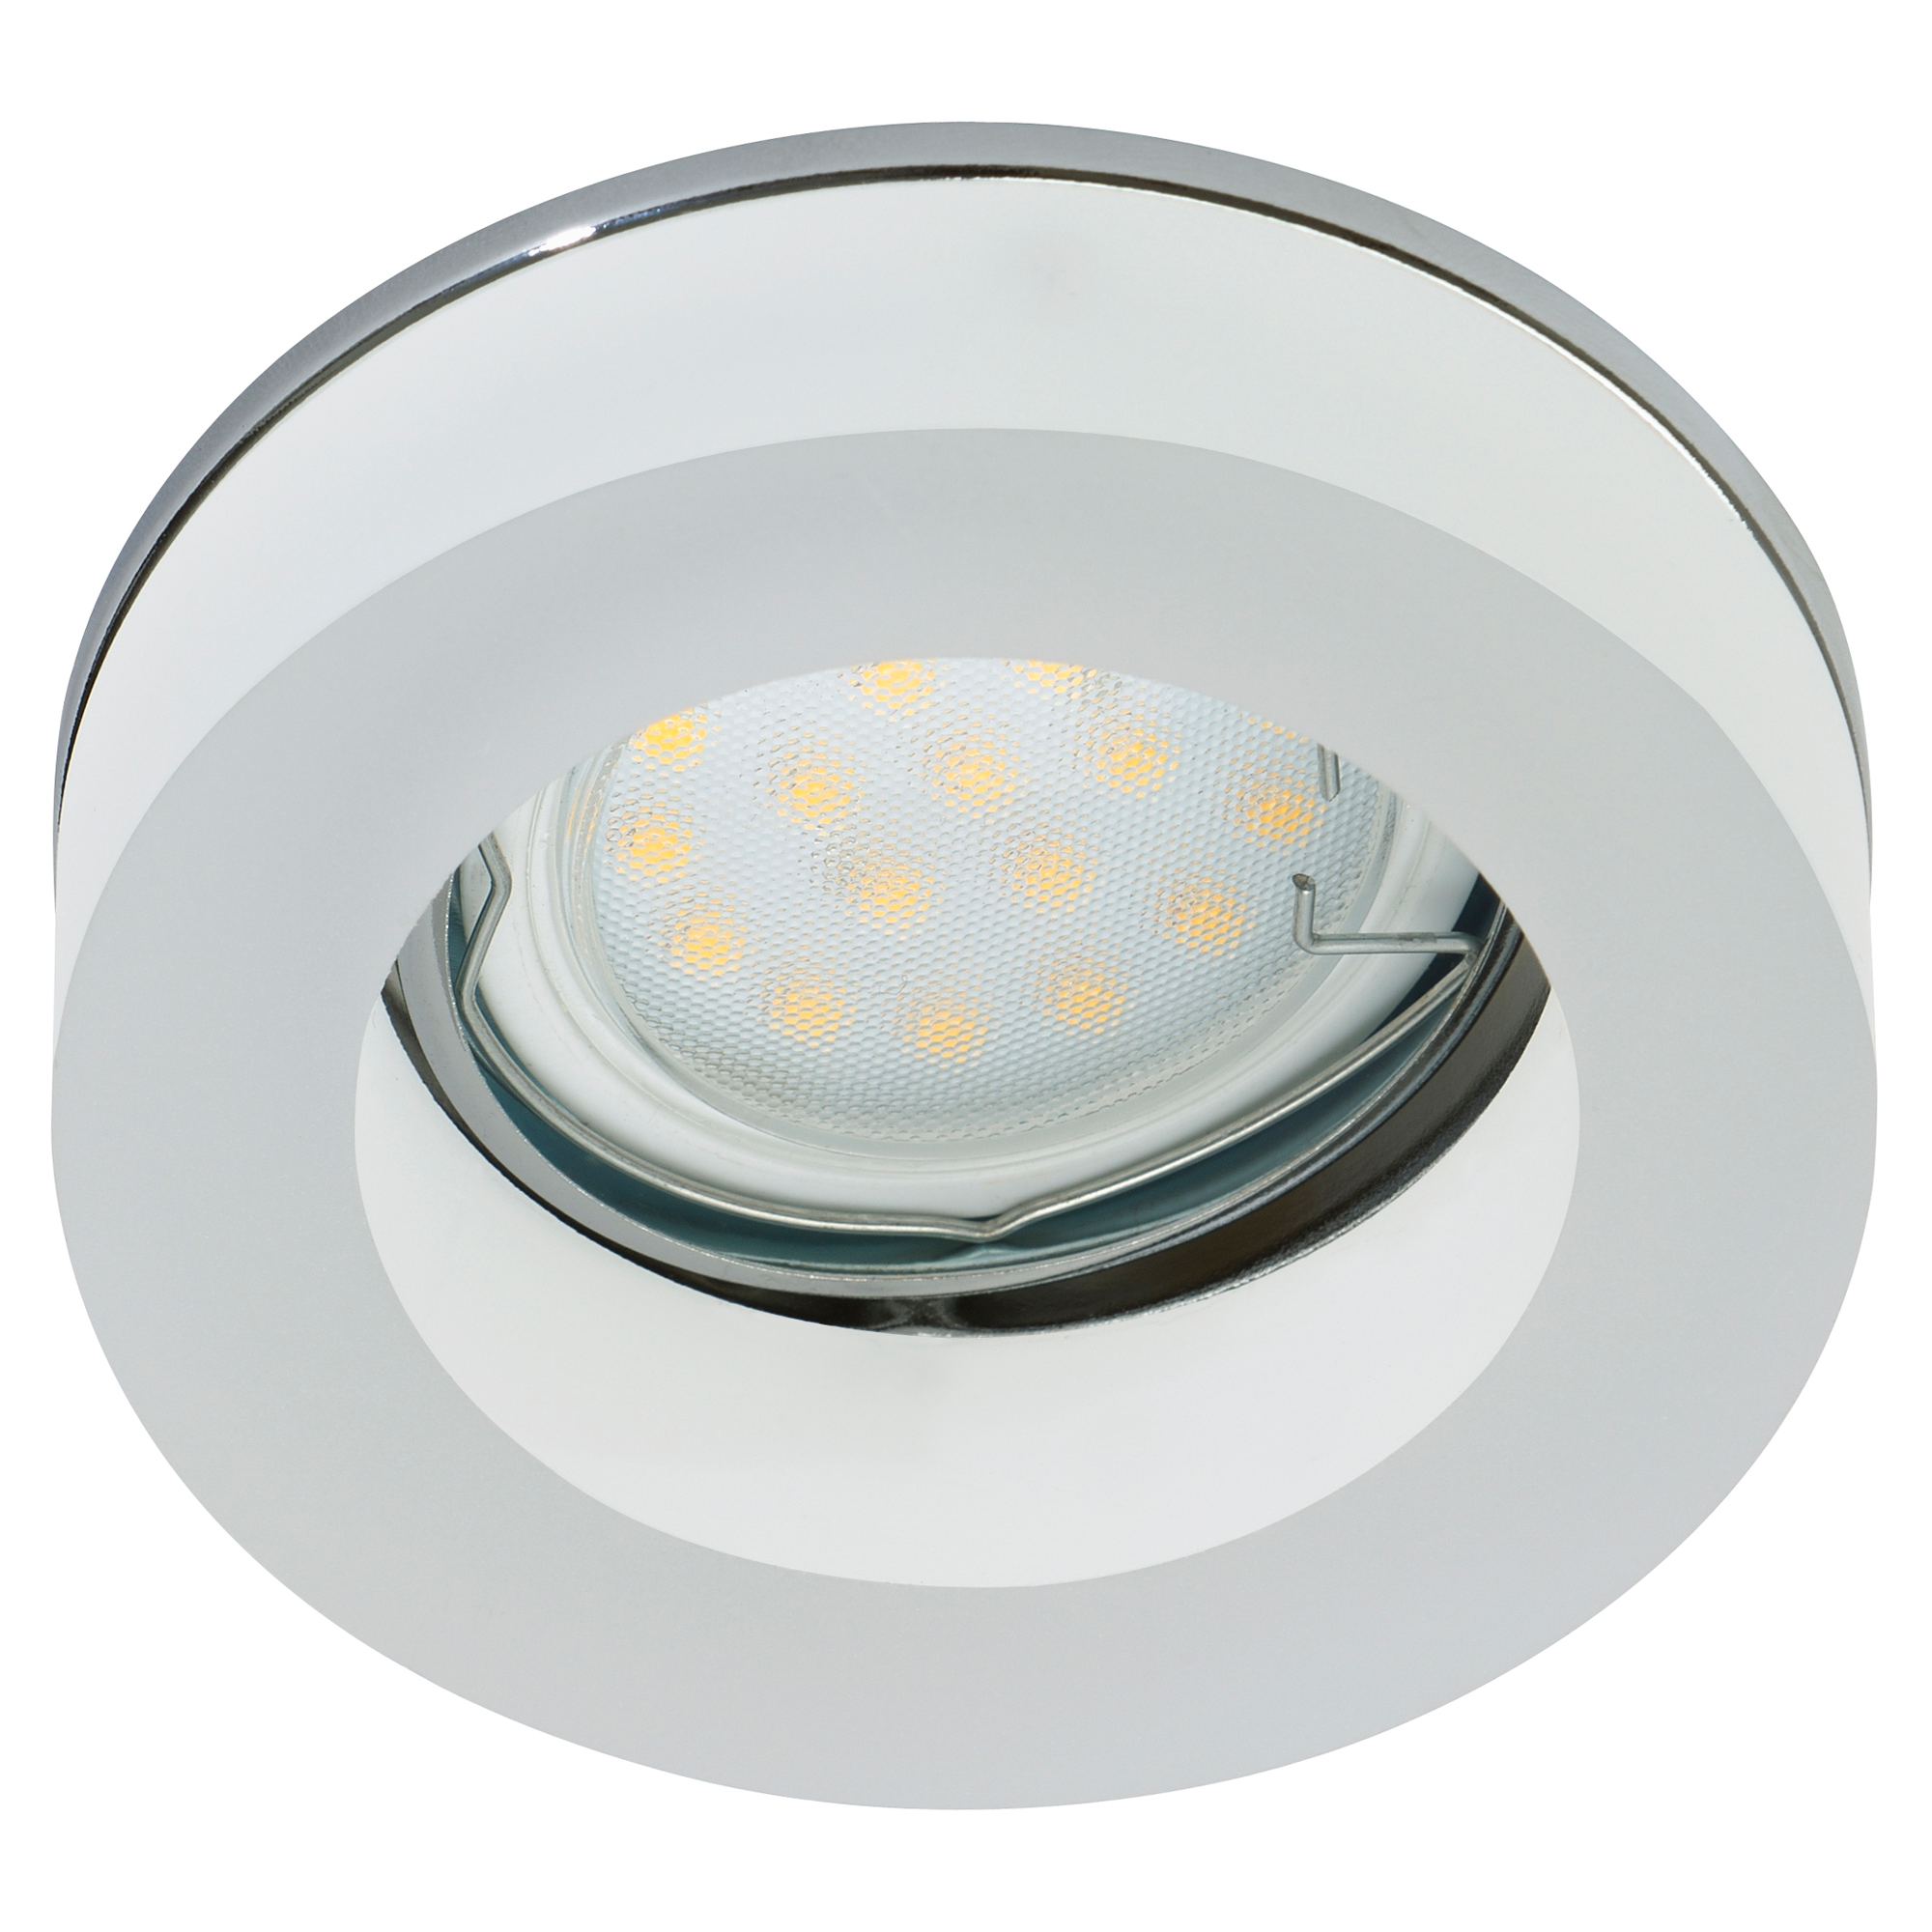 LED-Aufbauleuchte rund weiß/silbern 3 W + product picture